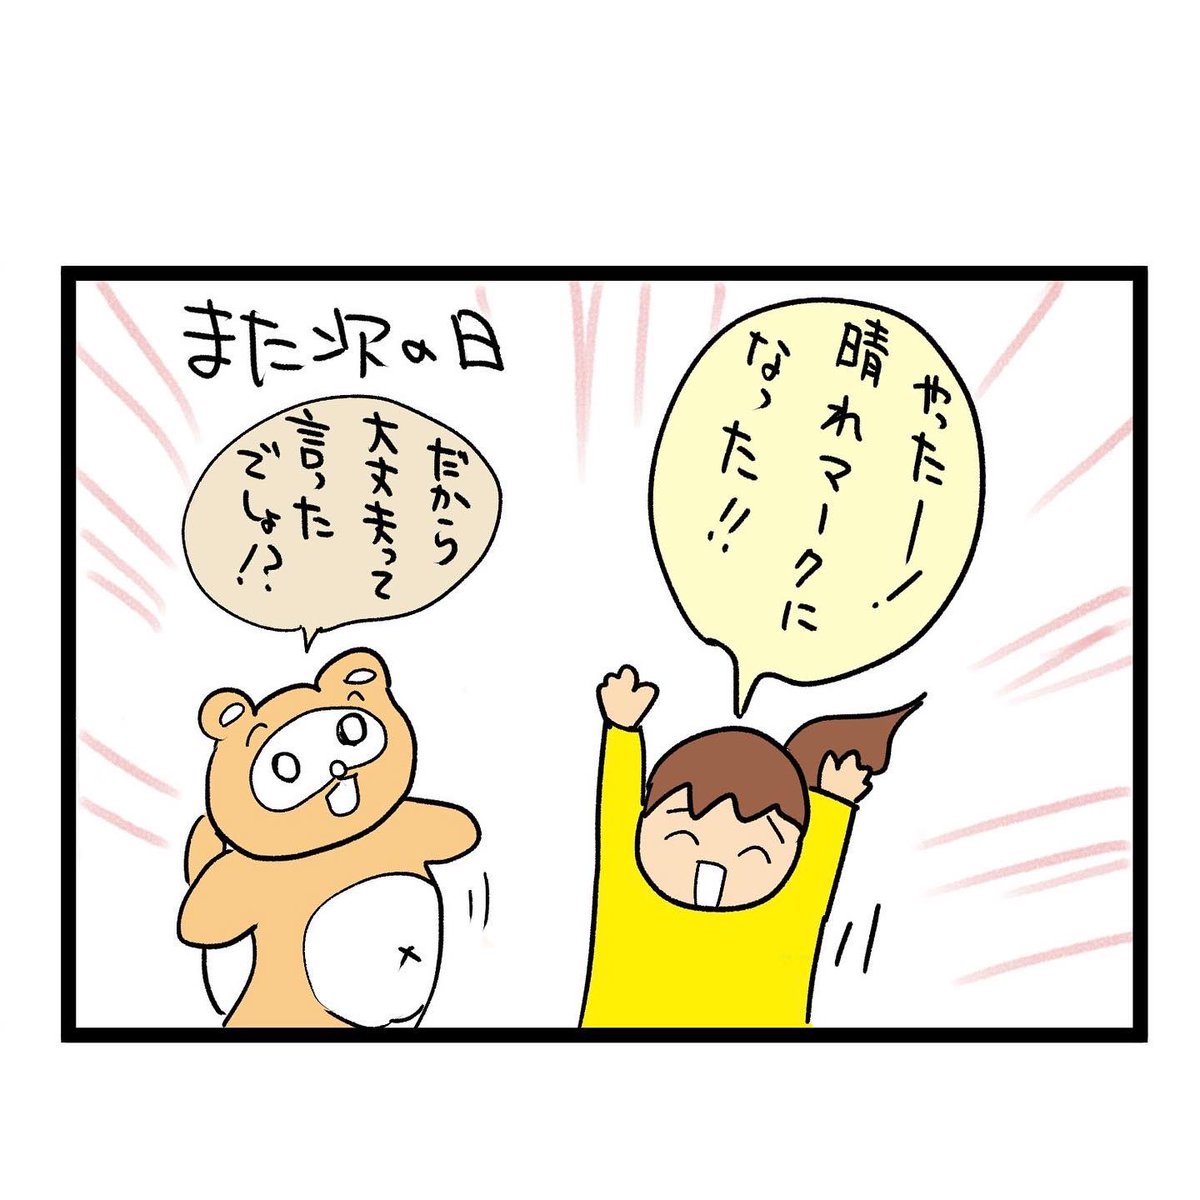 #四コマ漫画
天気予報 